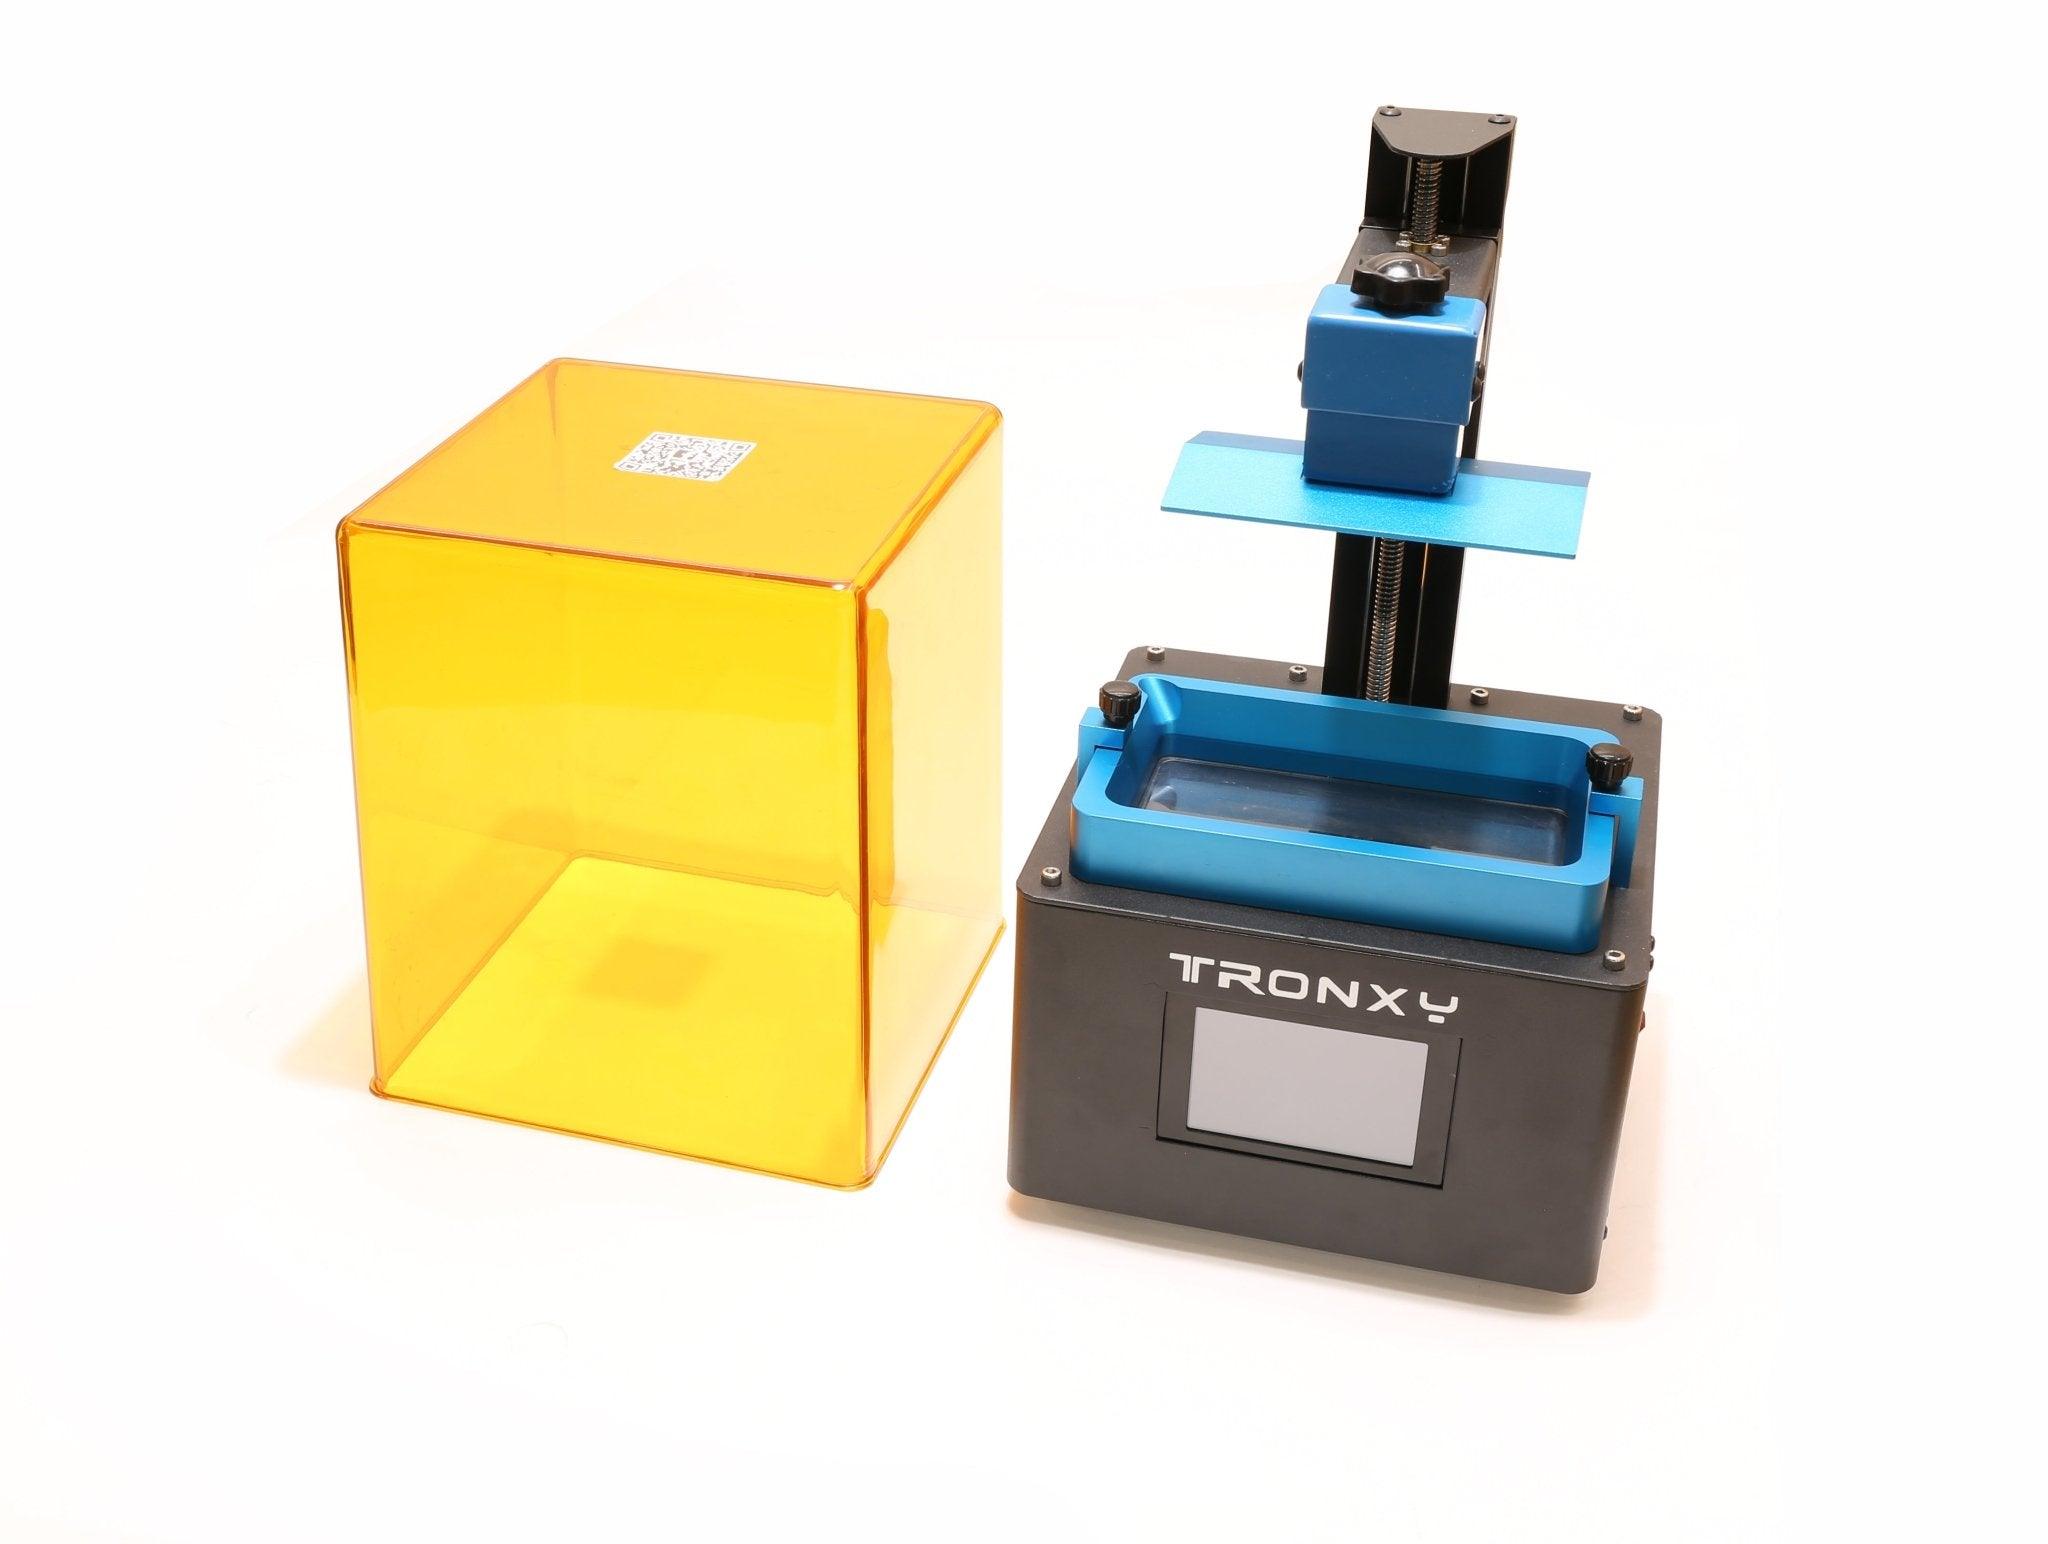 TRONXY Ultrabot Mini 5.5 Inch/ Ultrabot Mono Mini 6.08 Inch 3D Printer - Tronxy 3D Printers Official Store